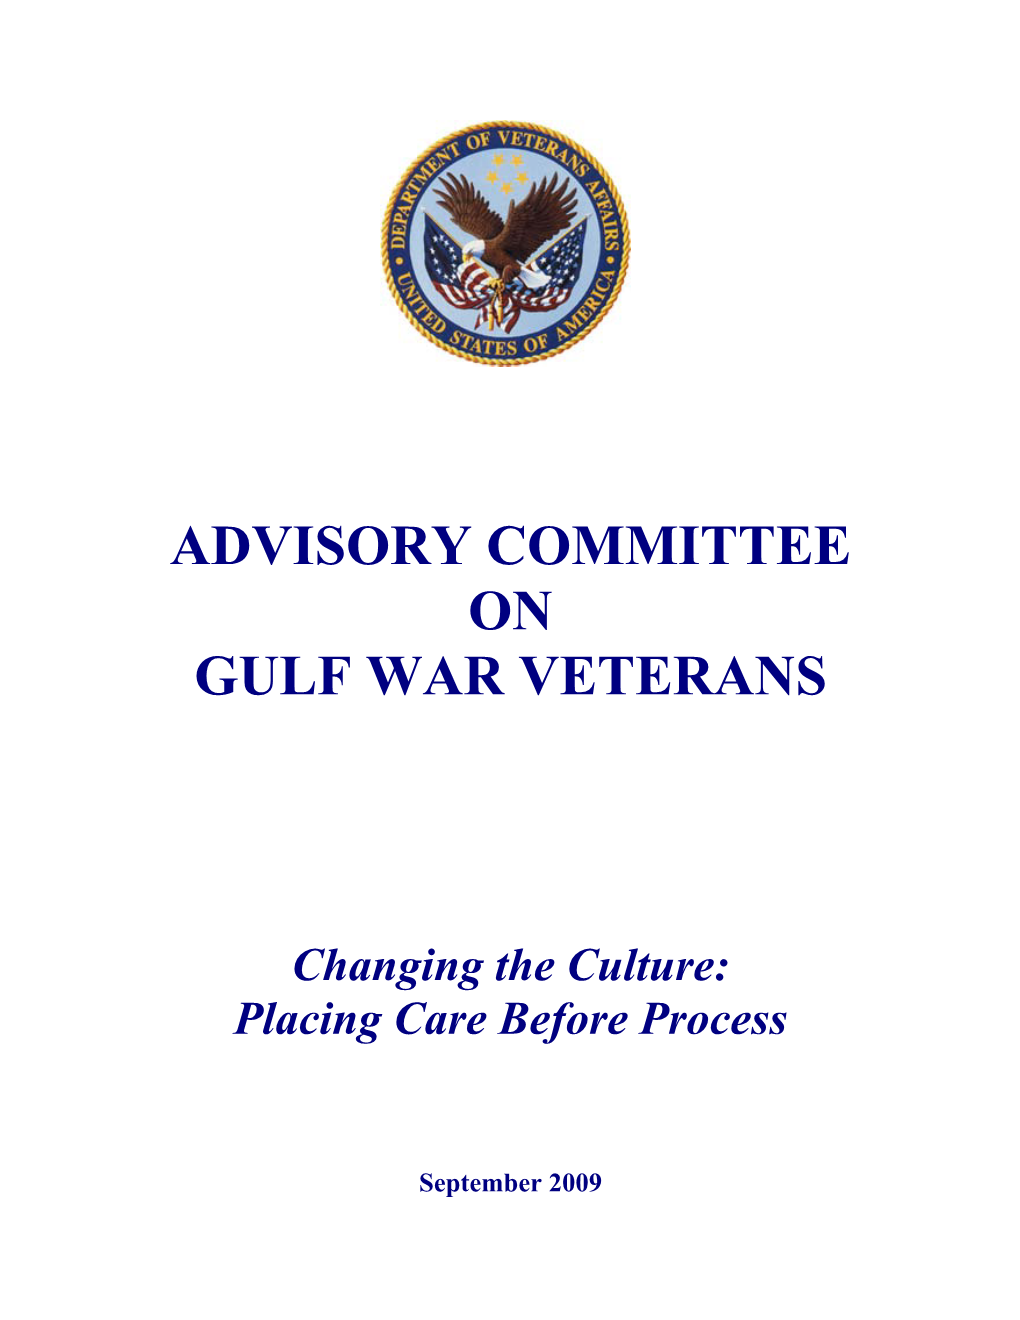 Advisory Committee on Gulf War Veterans Report